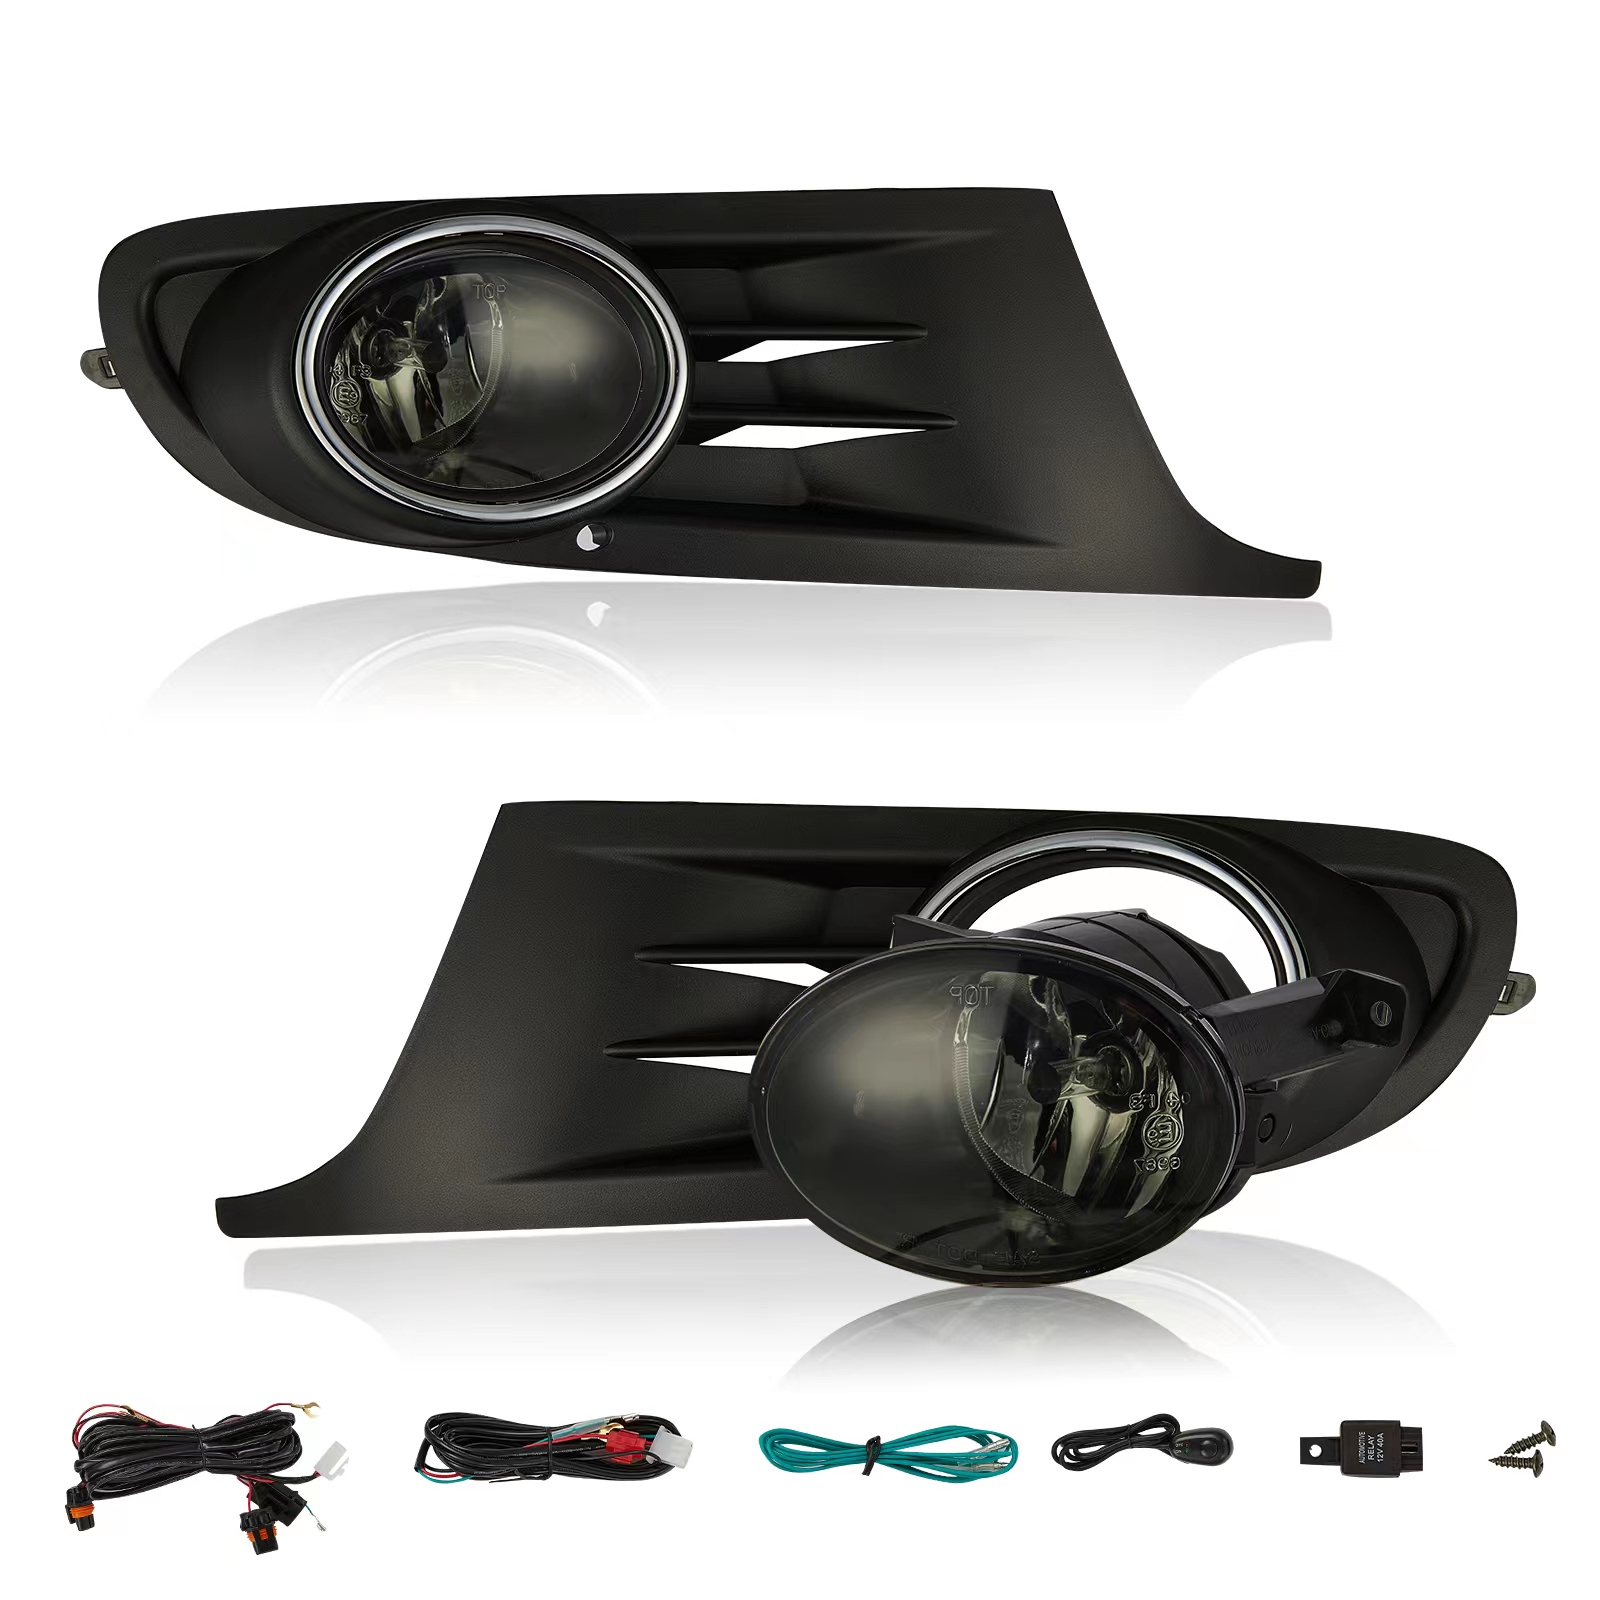 Nebelscheinwerfer Set HB4 + Gitter + Zubehör für Golf 6 VI Bj. 08-13 schwarz